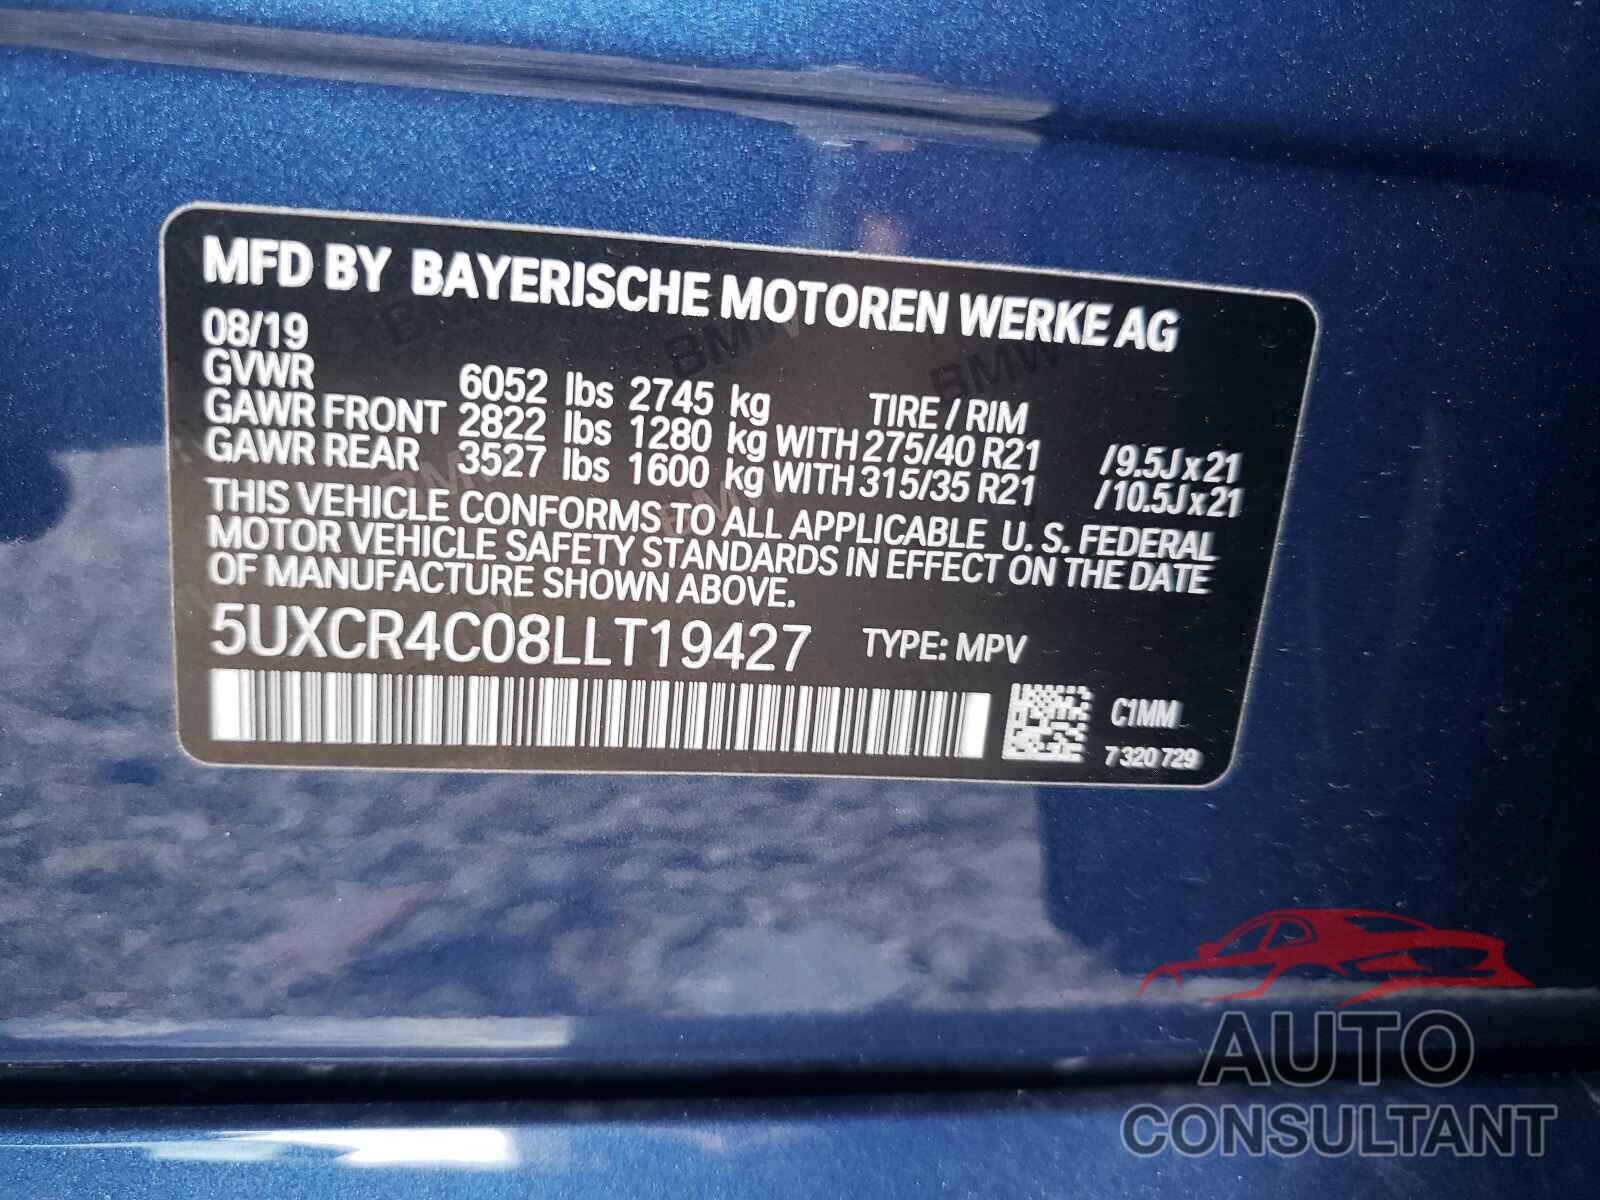 BMW X5 2020 - 5UXCR4C08LLT19427